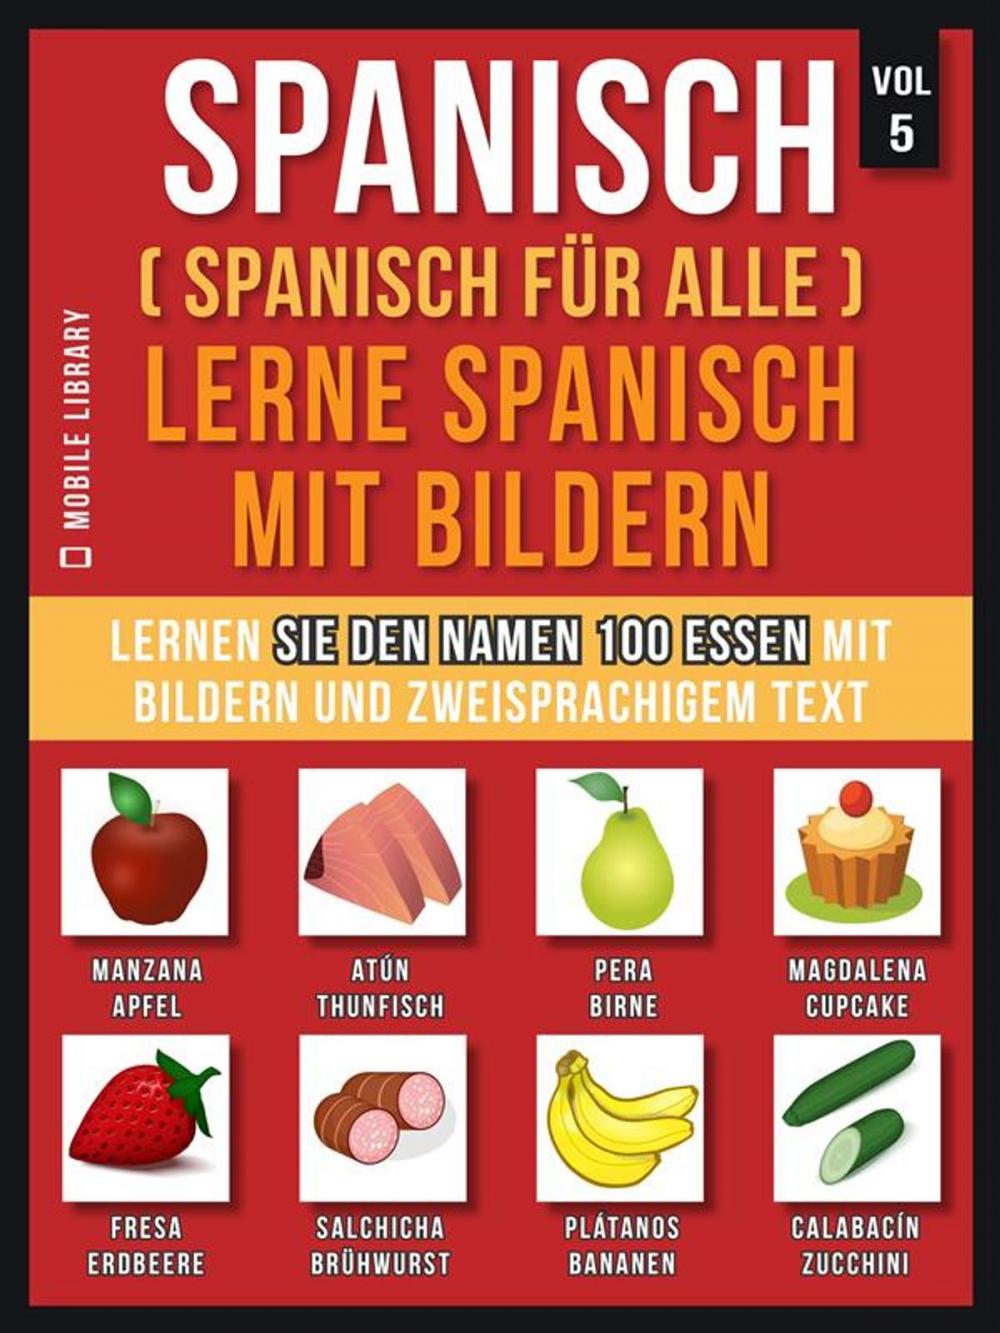 Big bigCover of Spanisch (Spanisch für alle) Lerne Spanisch mit Bildern (Vol 5)